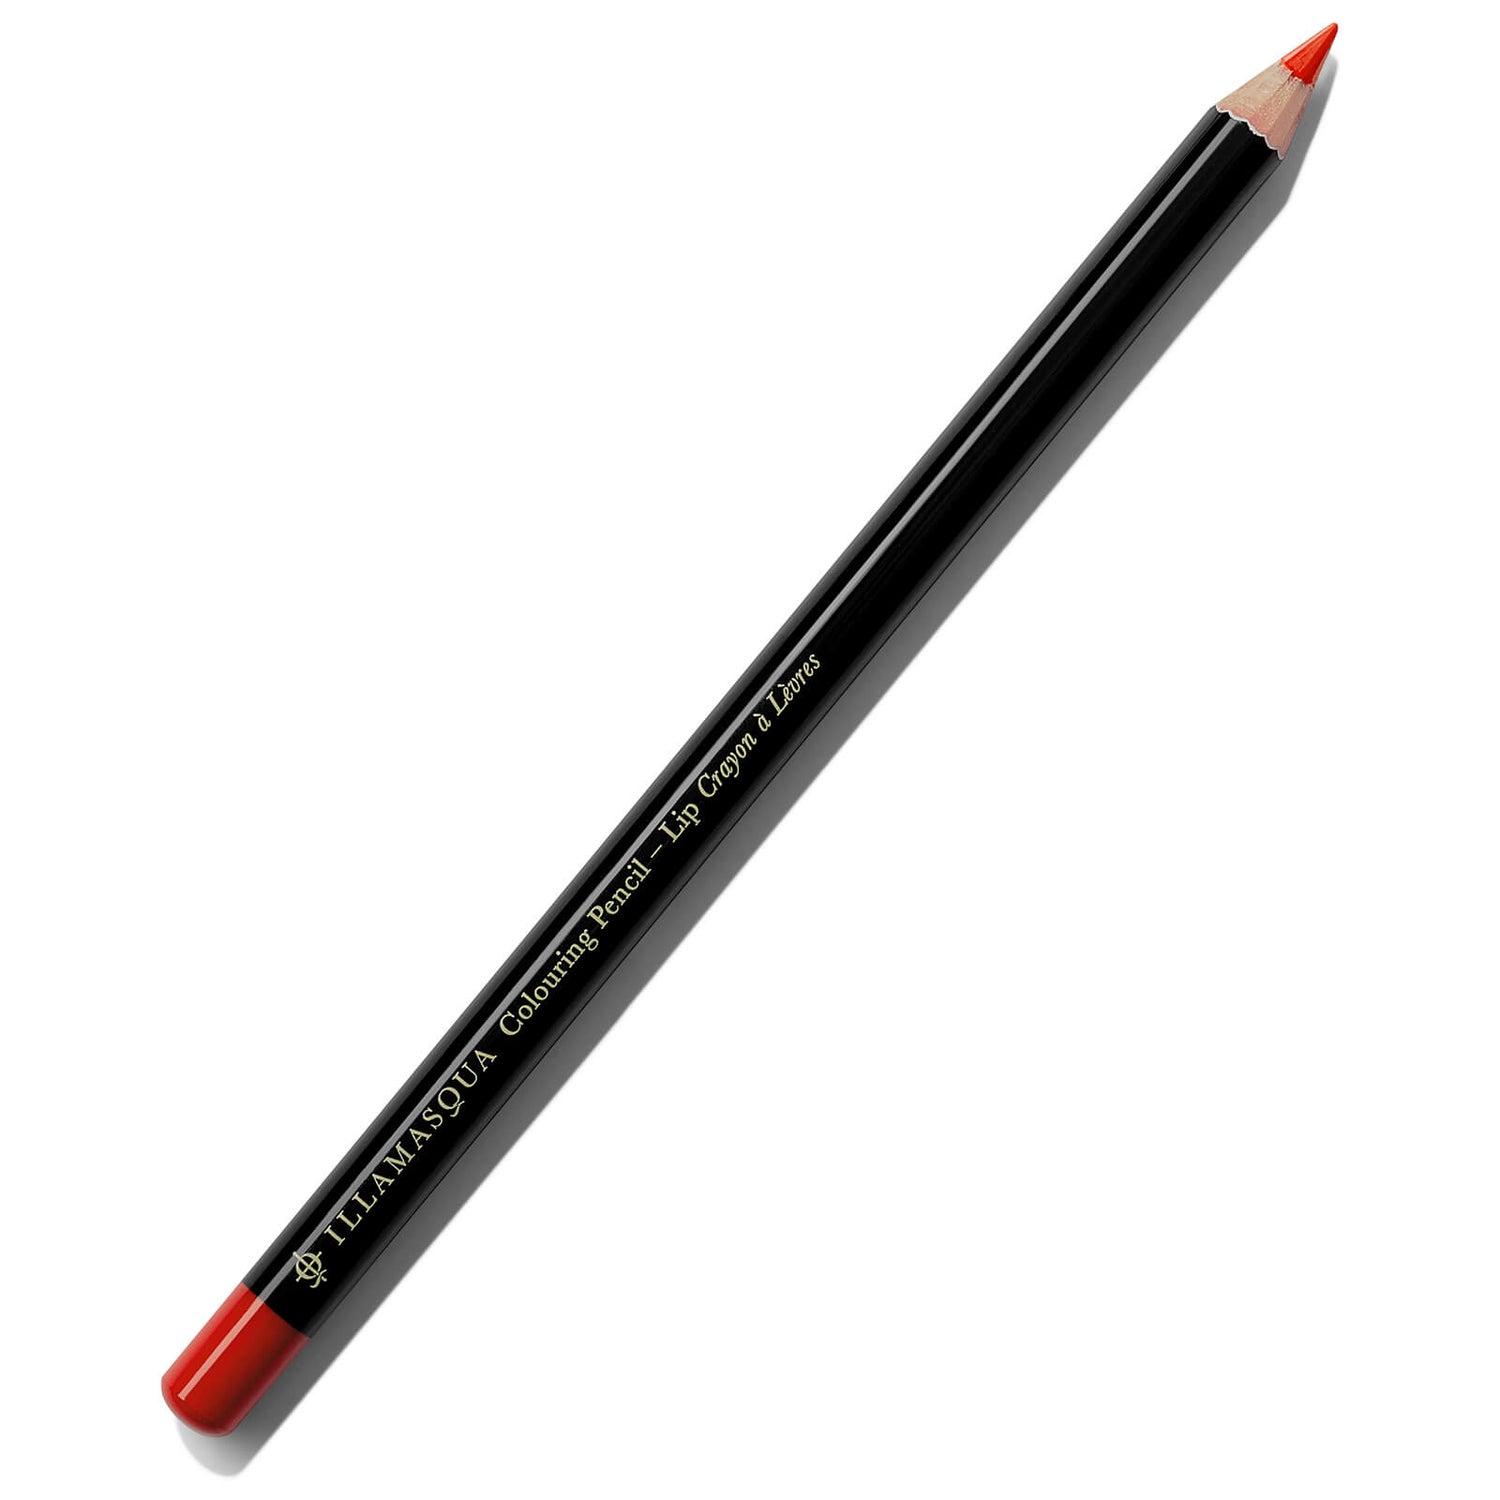 Illamasqua Coloring Lip Pencil 1.4g (Various Shades)